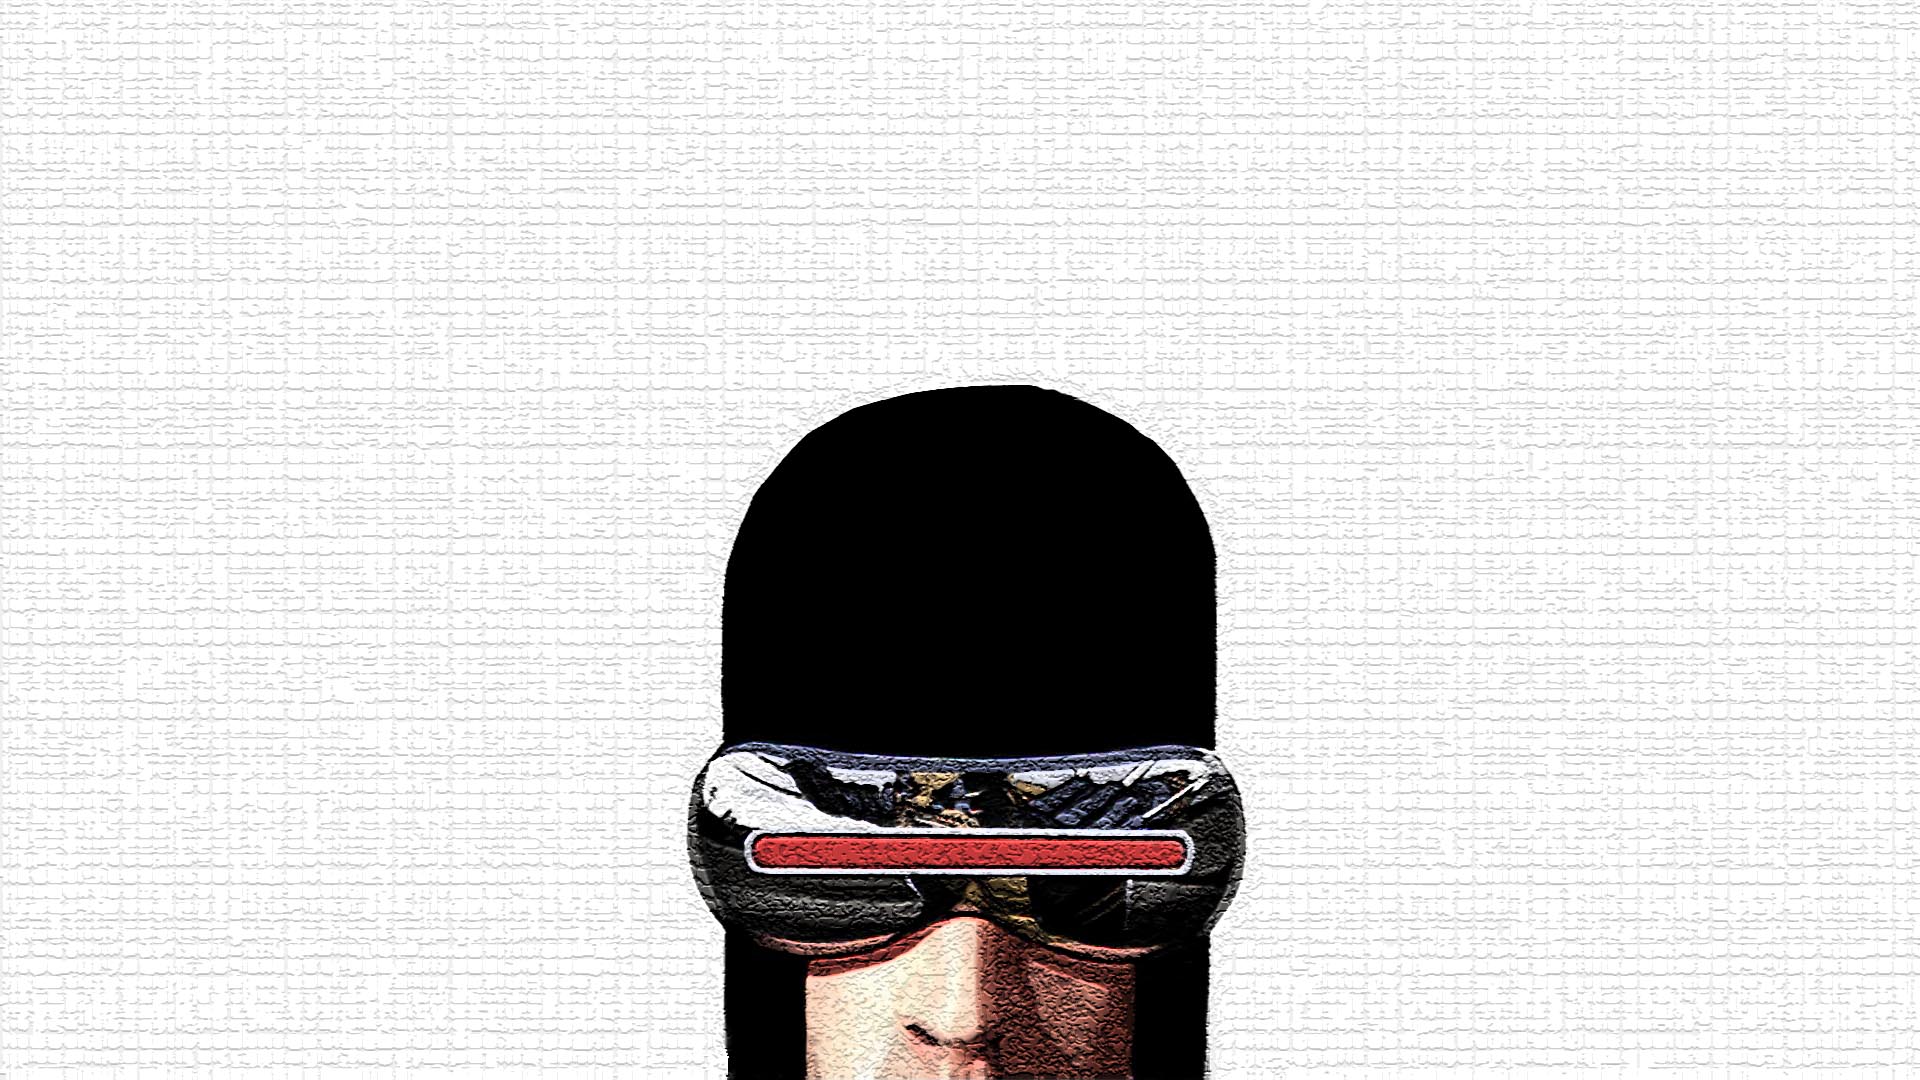 Cyclops Computer Wallpaper, Desktop Background 1920x1080 Id: 473037